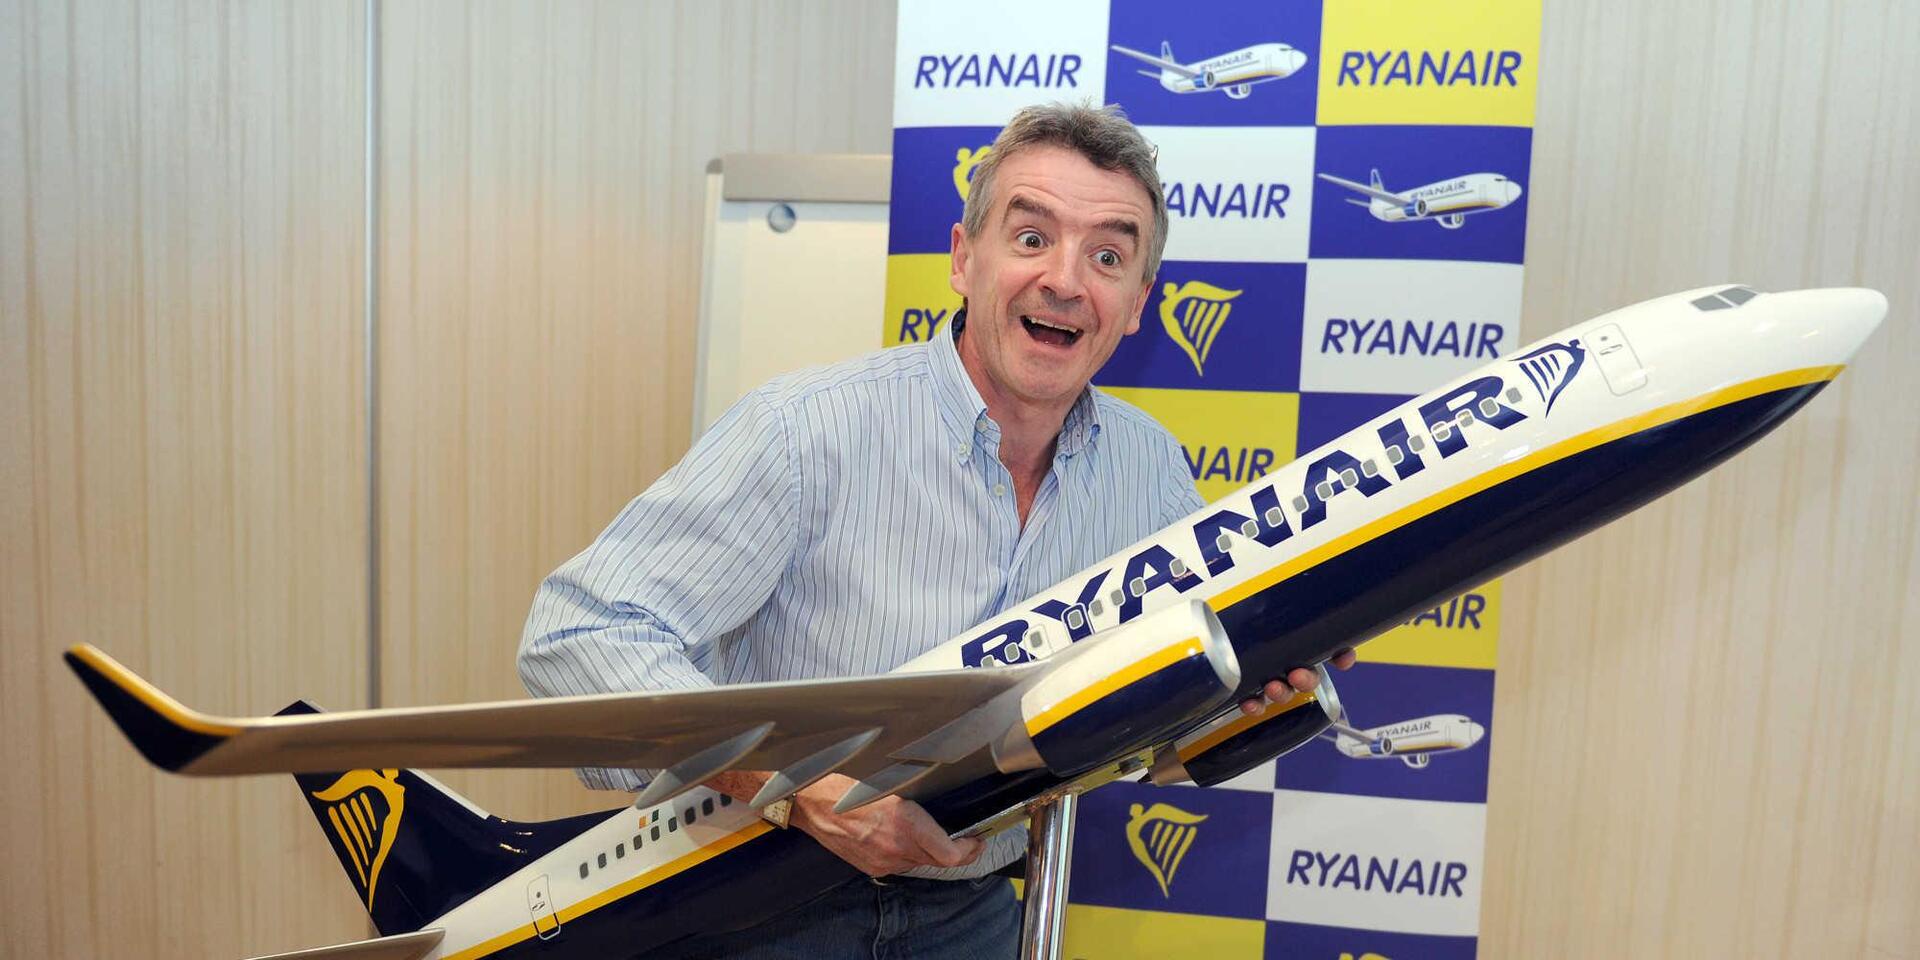 Πρόεδρος της Ryanair: Το Brexit ήταν η πιο ηλίθια απόφαση των Βρετανών